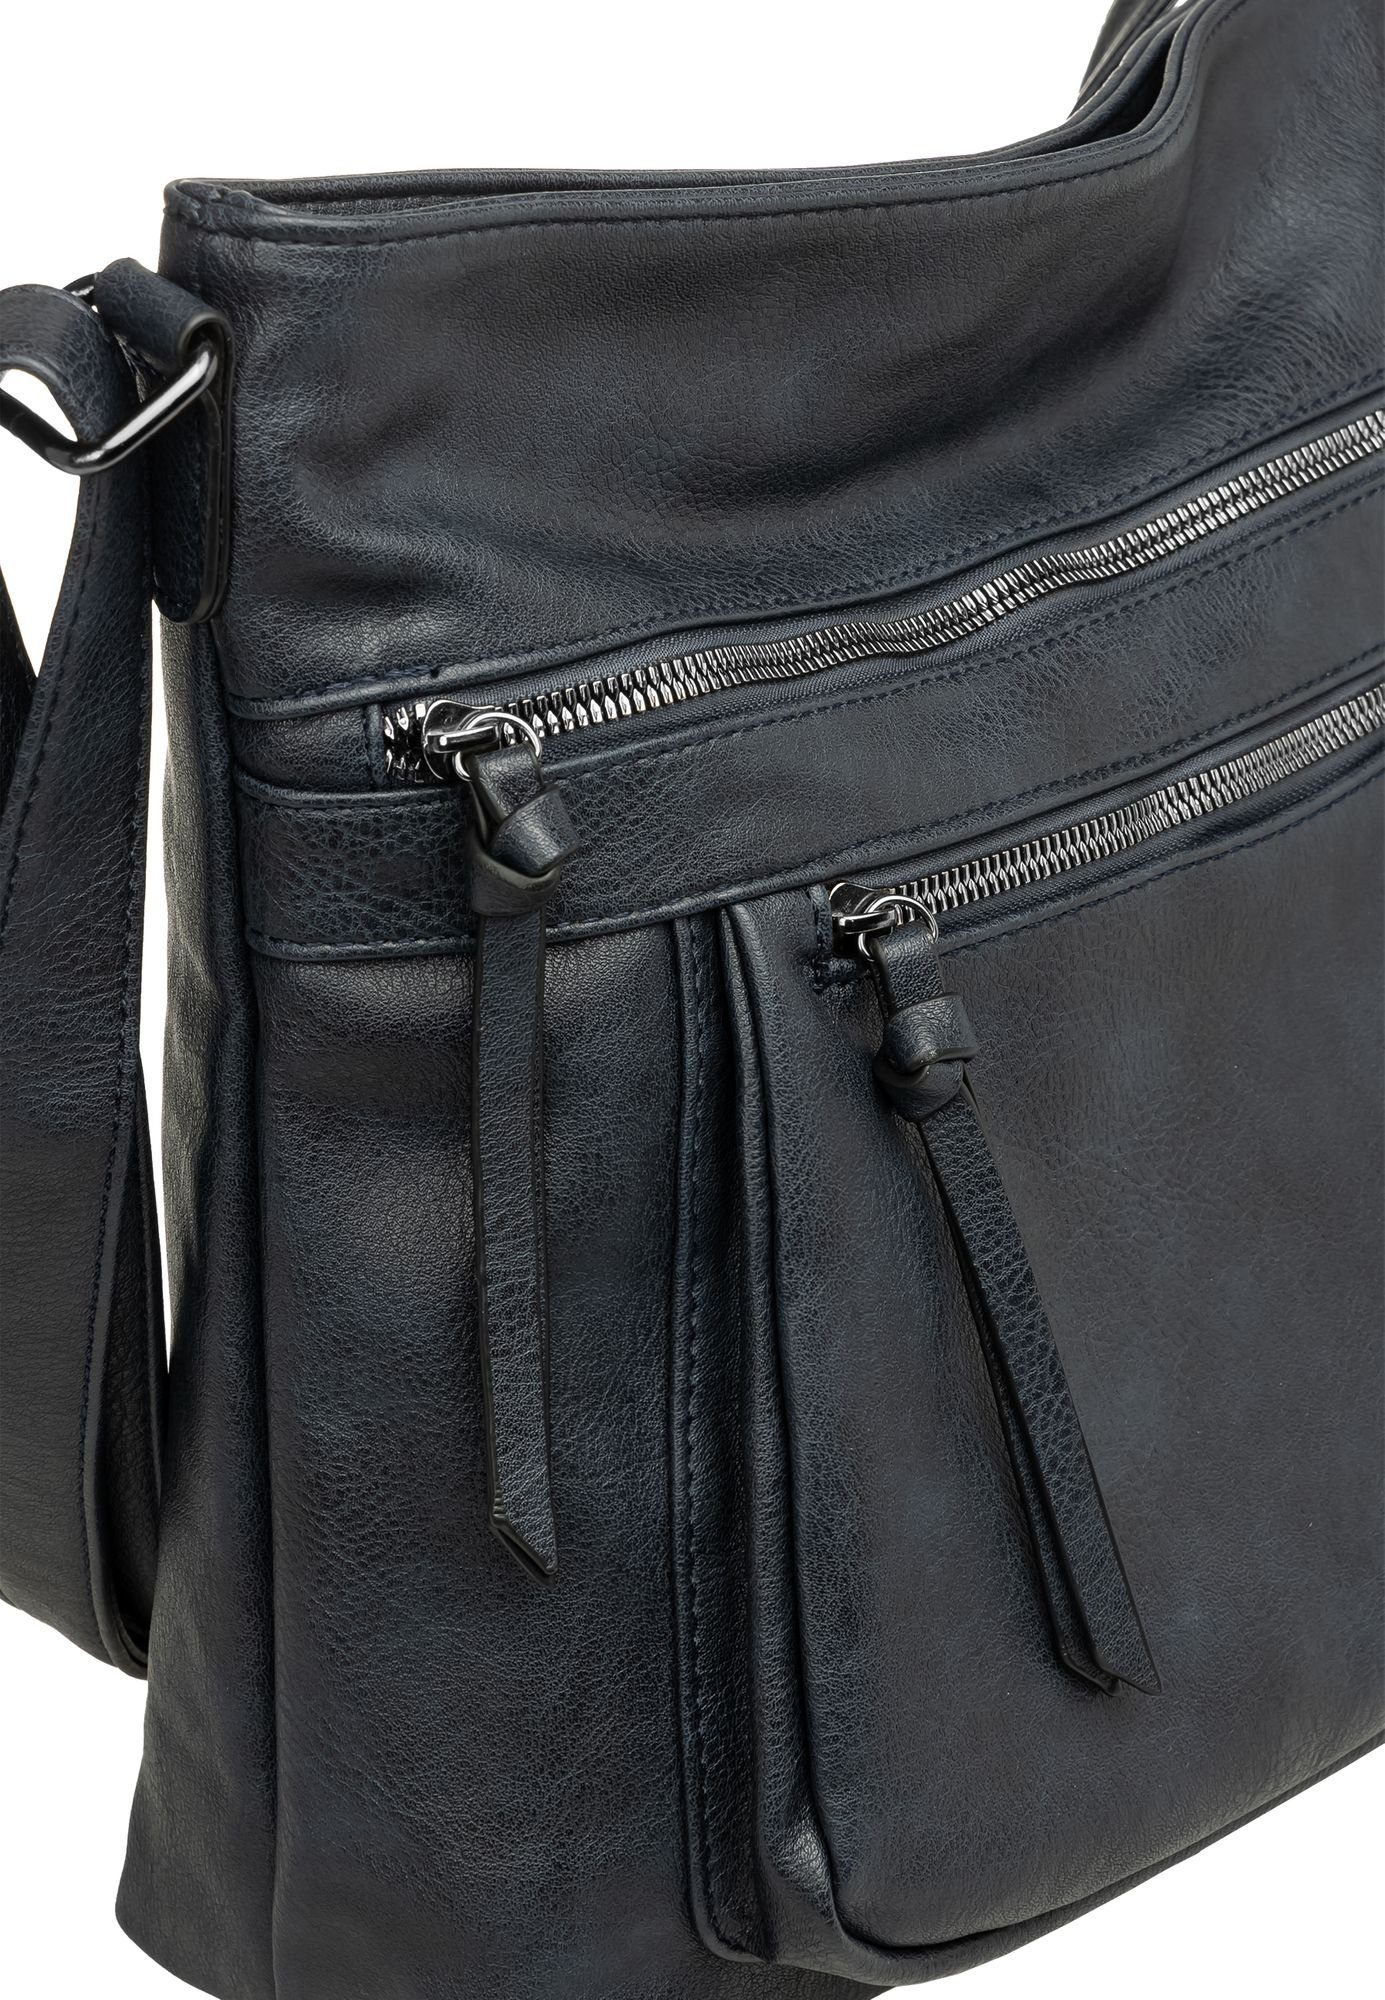 Caspar Umhängetasche TS1070 Damen Umhängetasche Crossbody dunkelblau sportlich elegante mittelgroße Bag